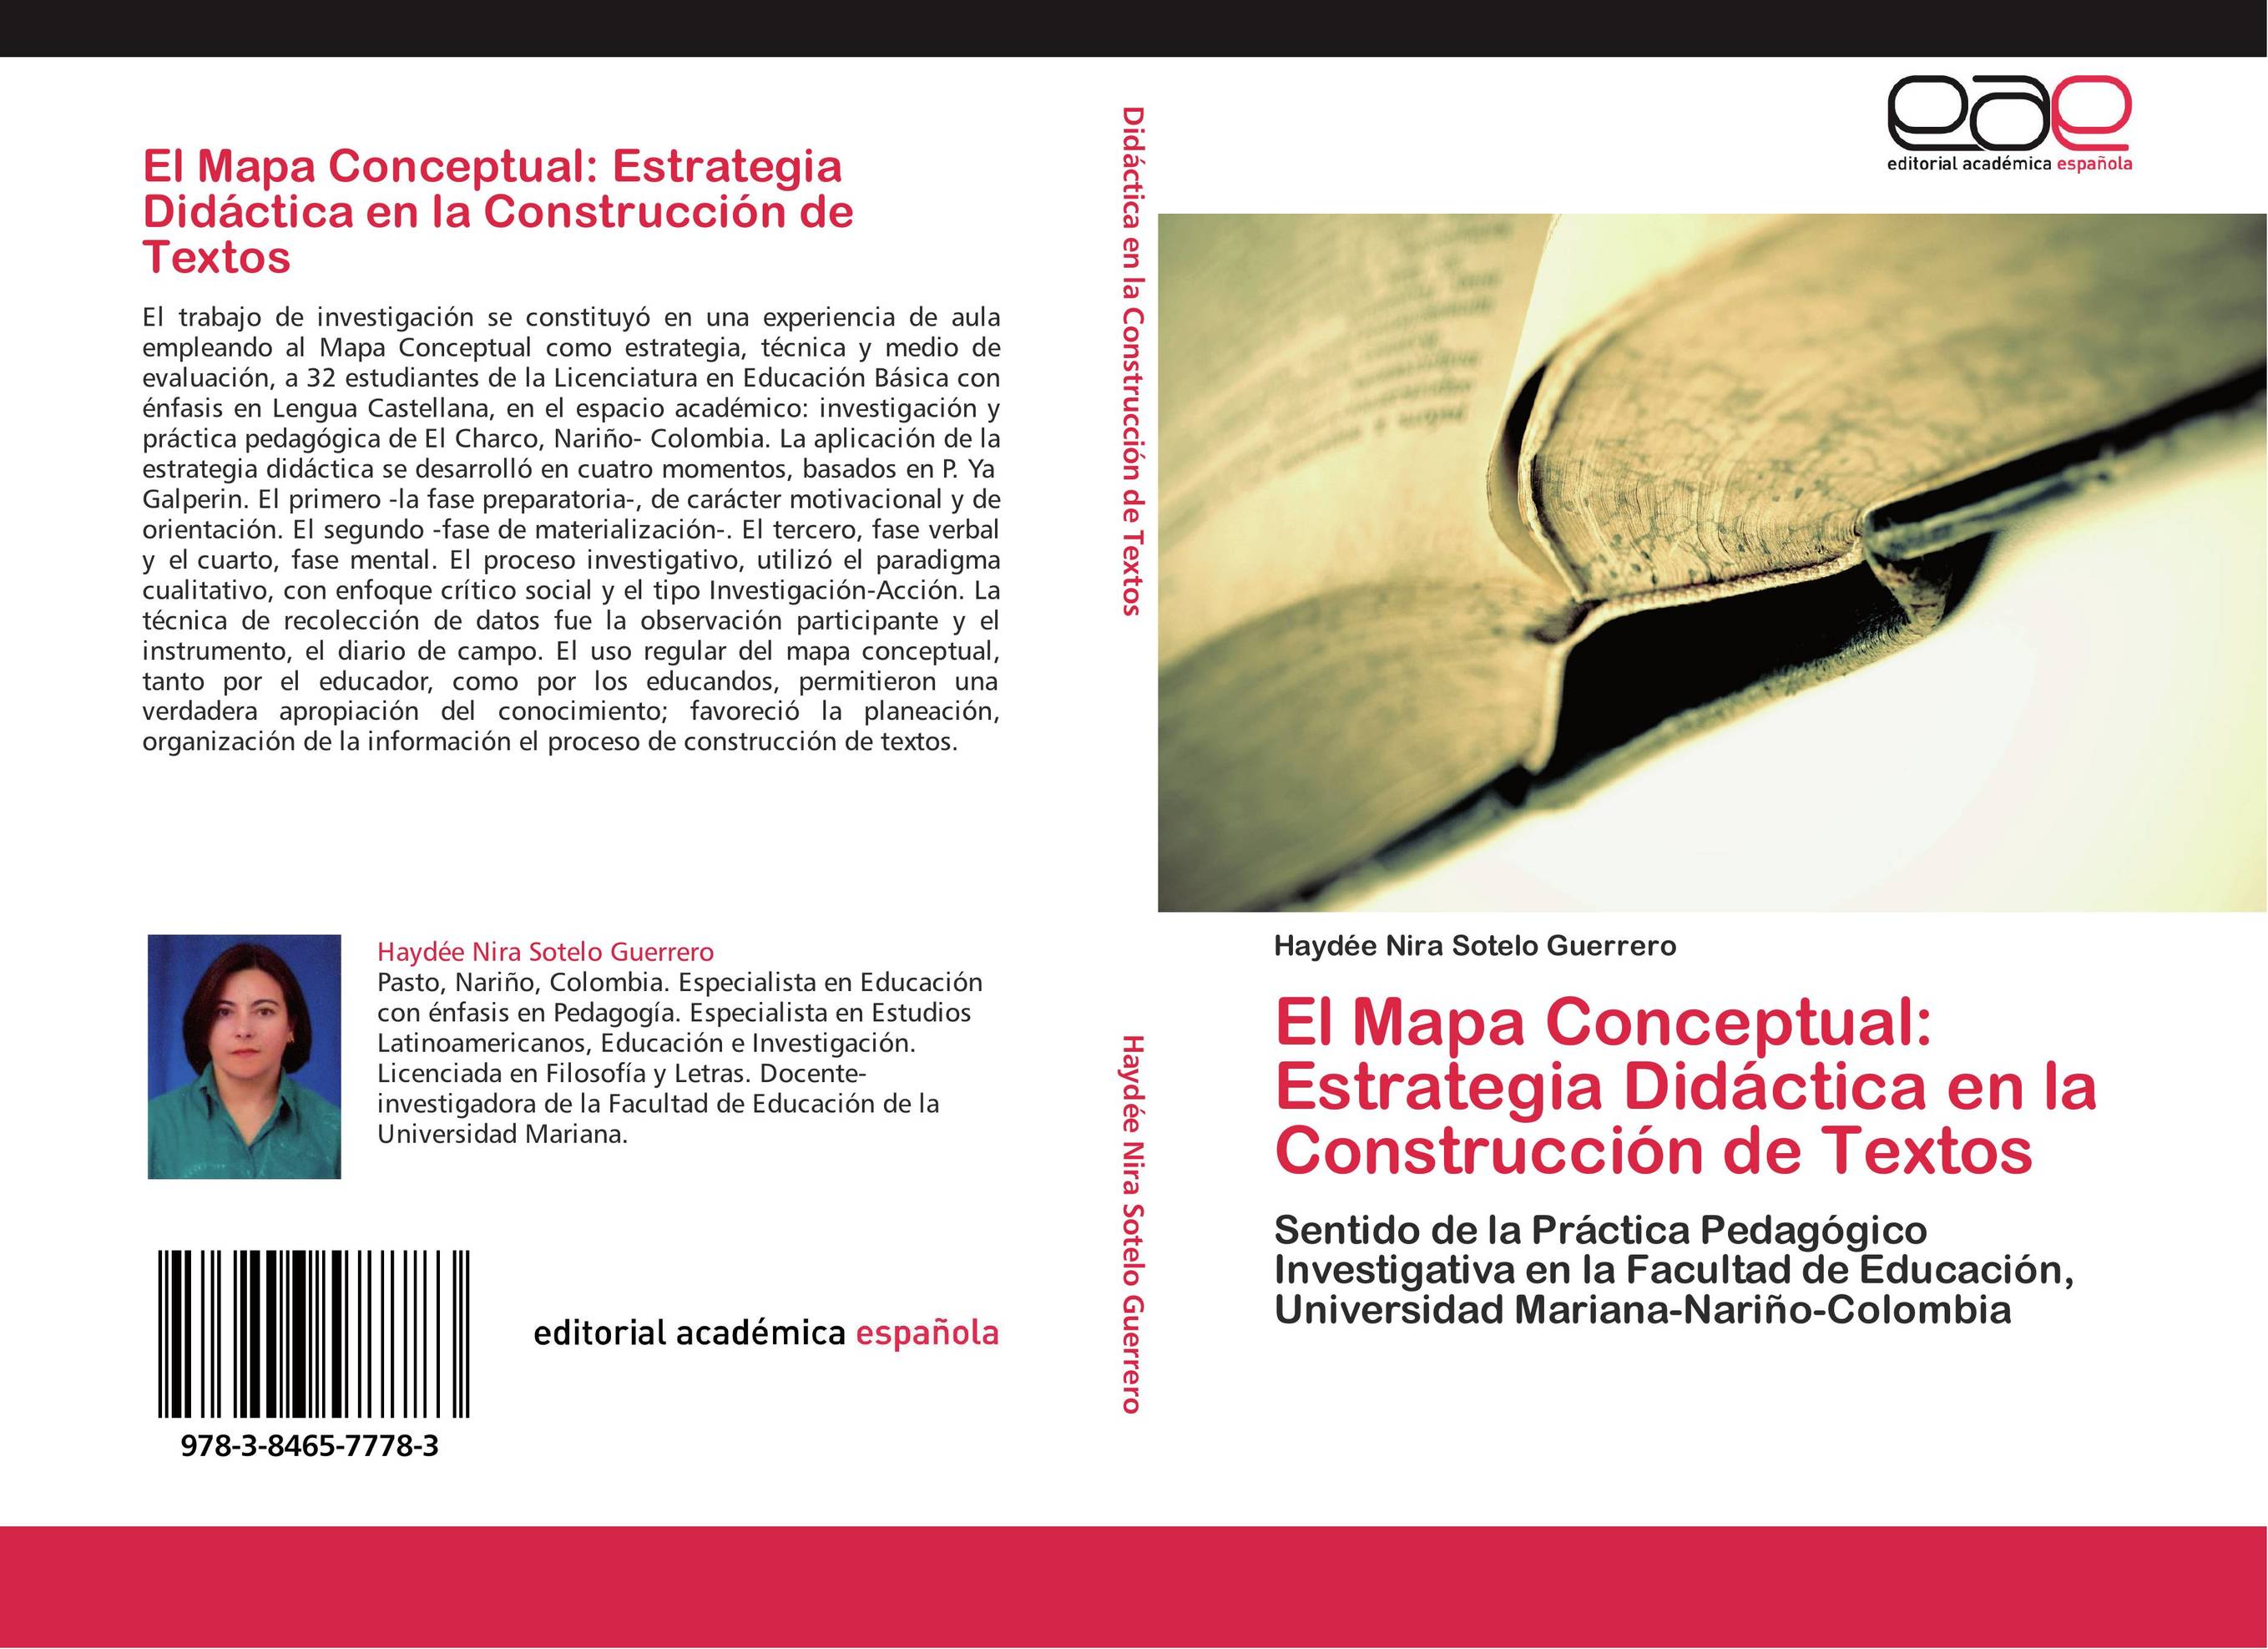 El Mapa Conceptual: Estrategia Didáctica en la Construcción de Textos